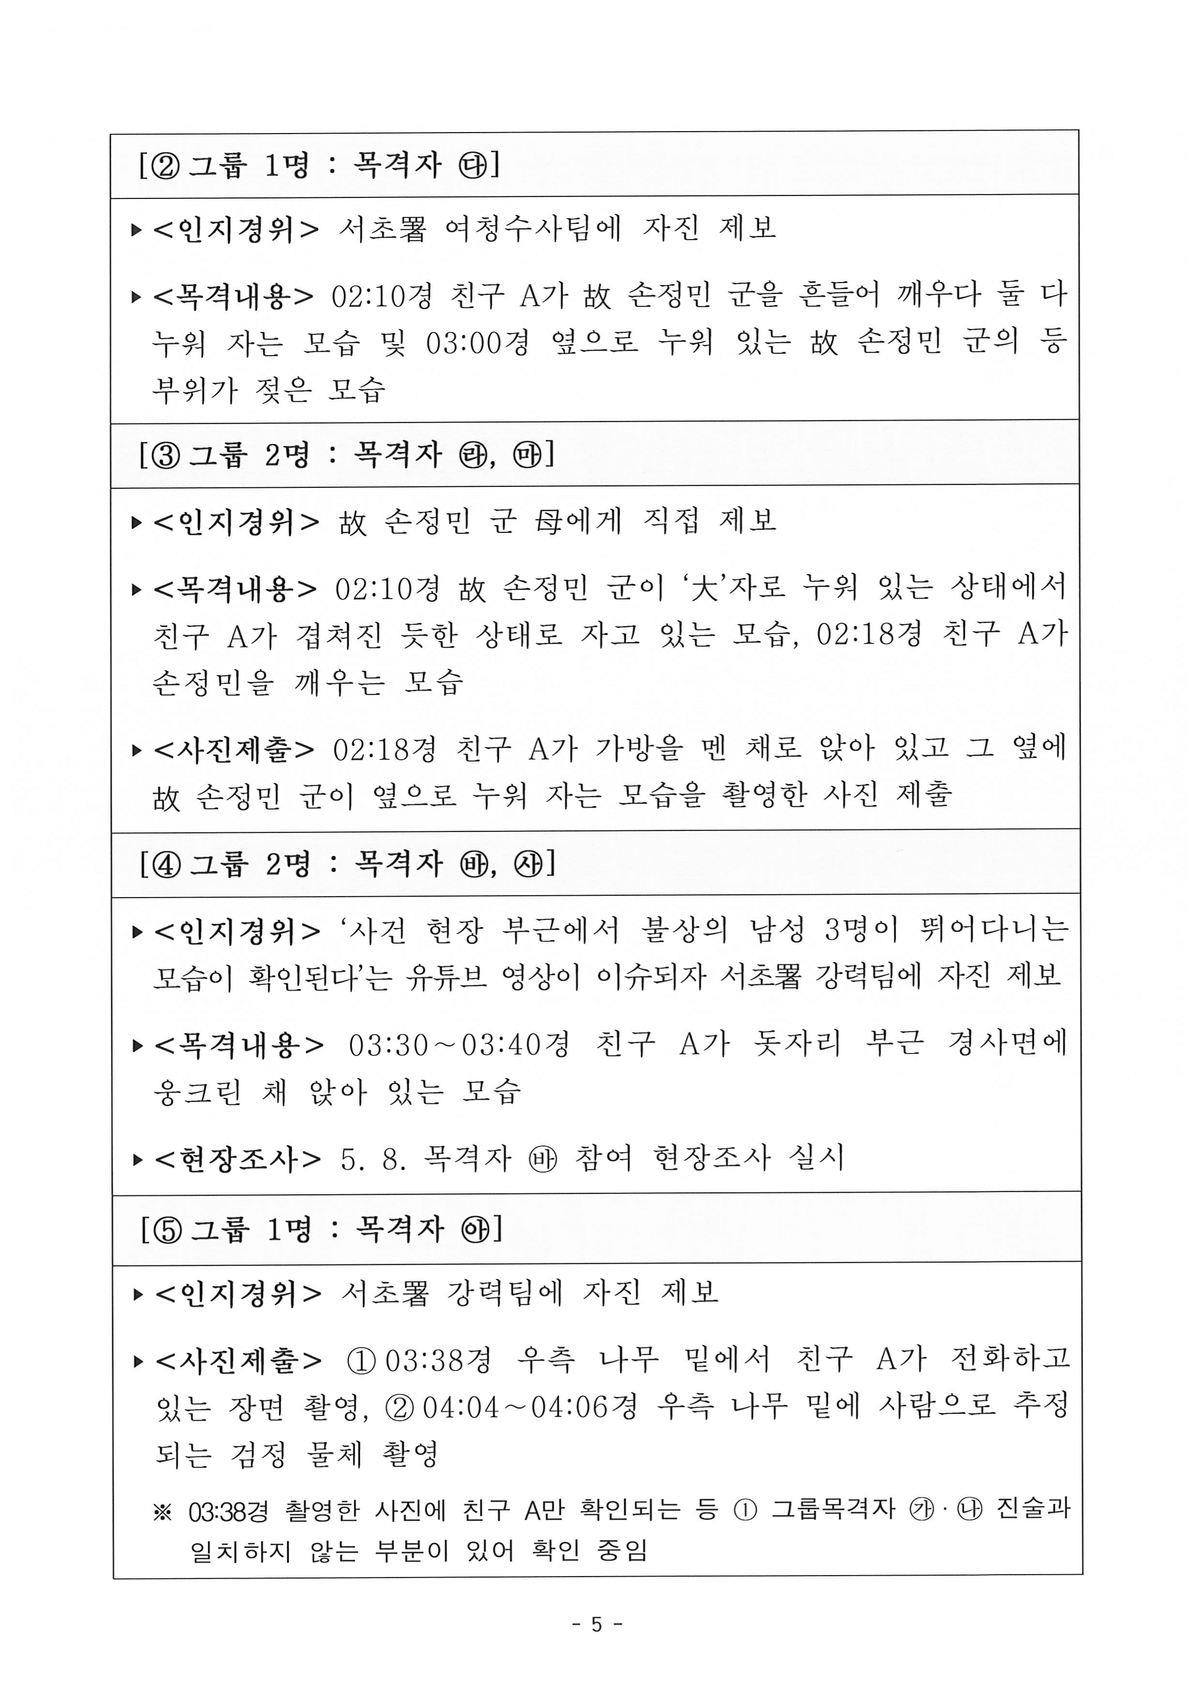 [서울경찰청] 한강 대학생 사망사건 관련 설명자료